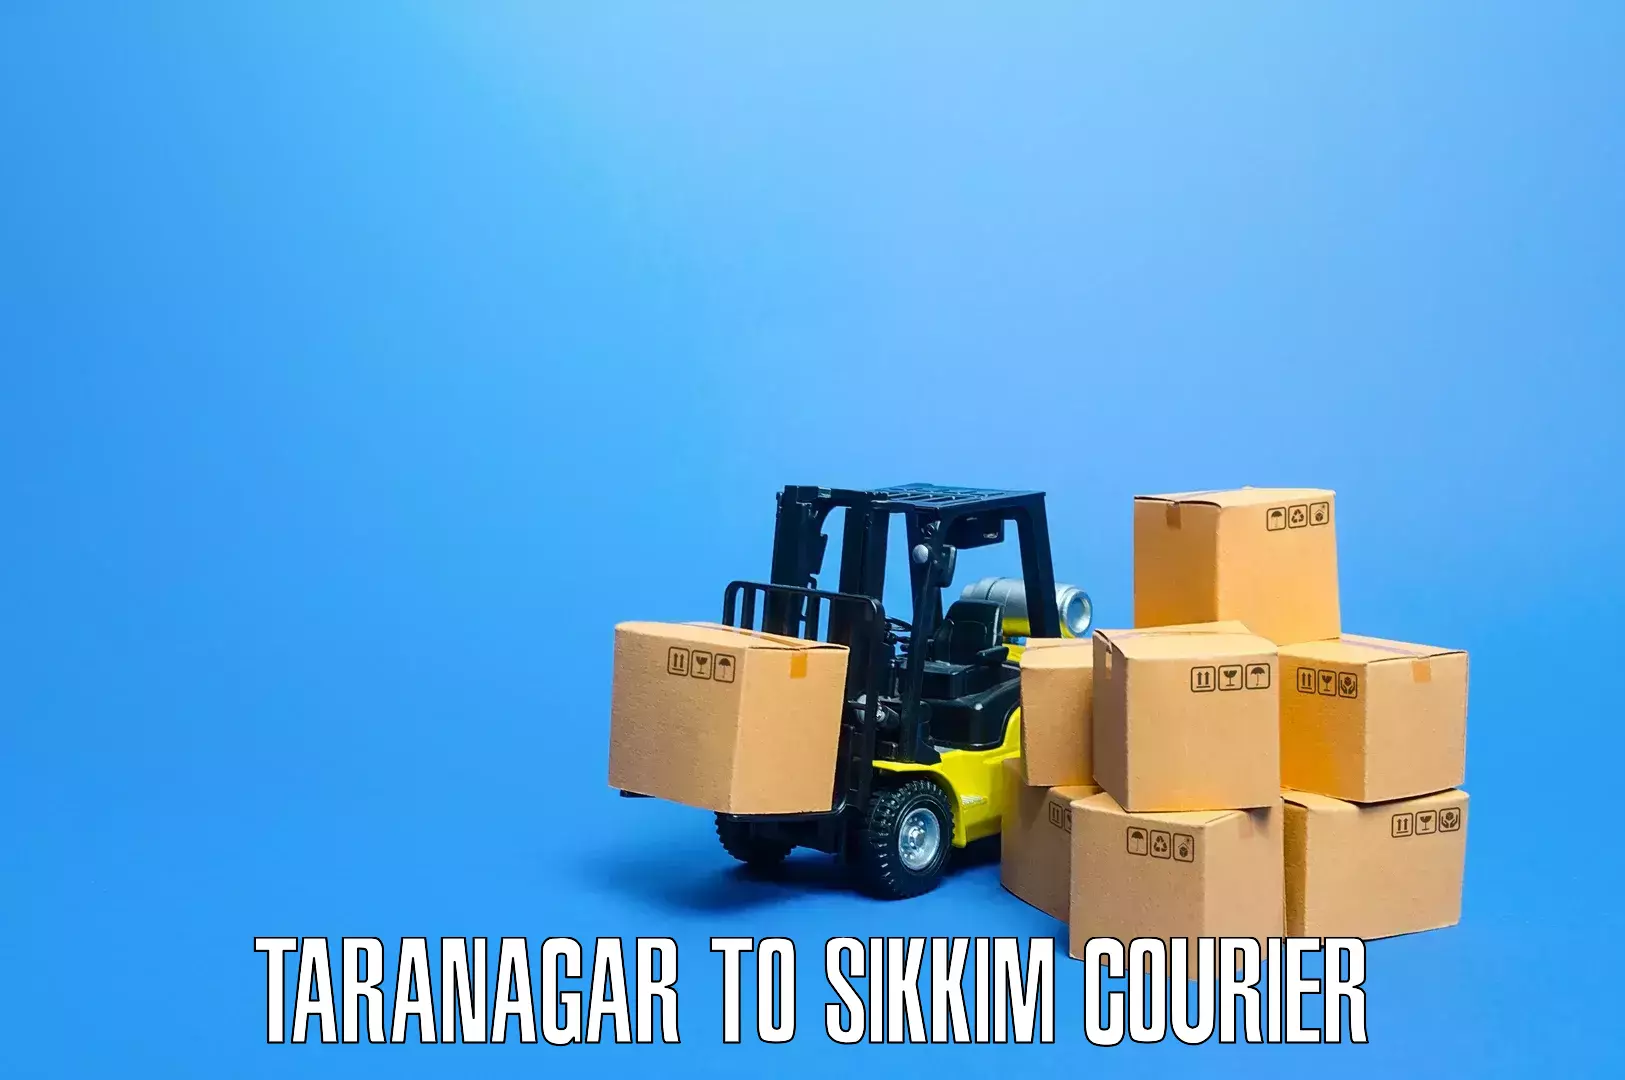 Professional movers Taranagar to Jorethang